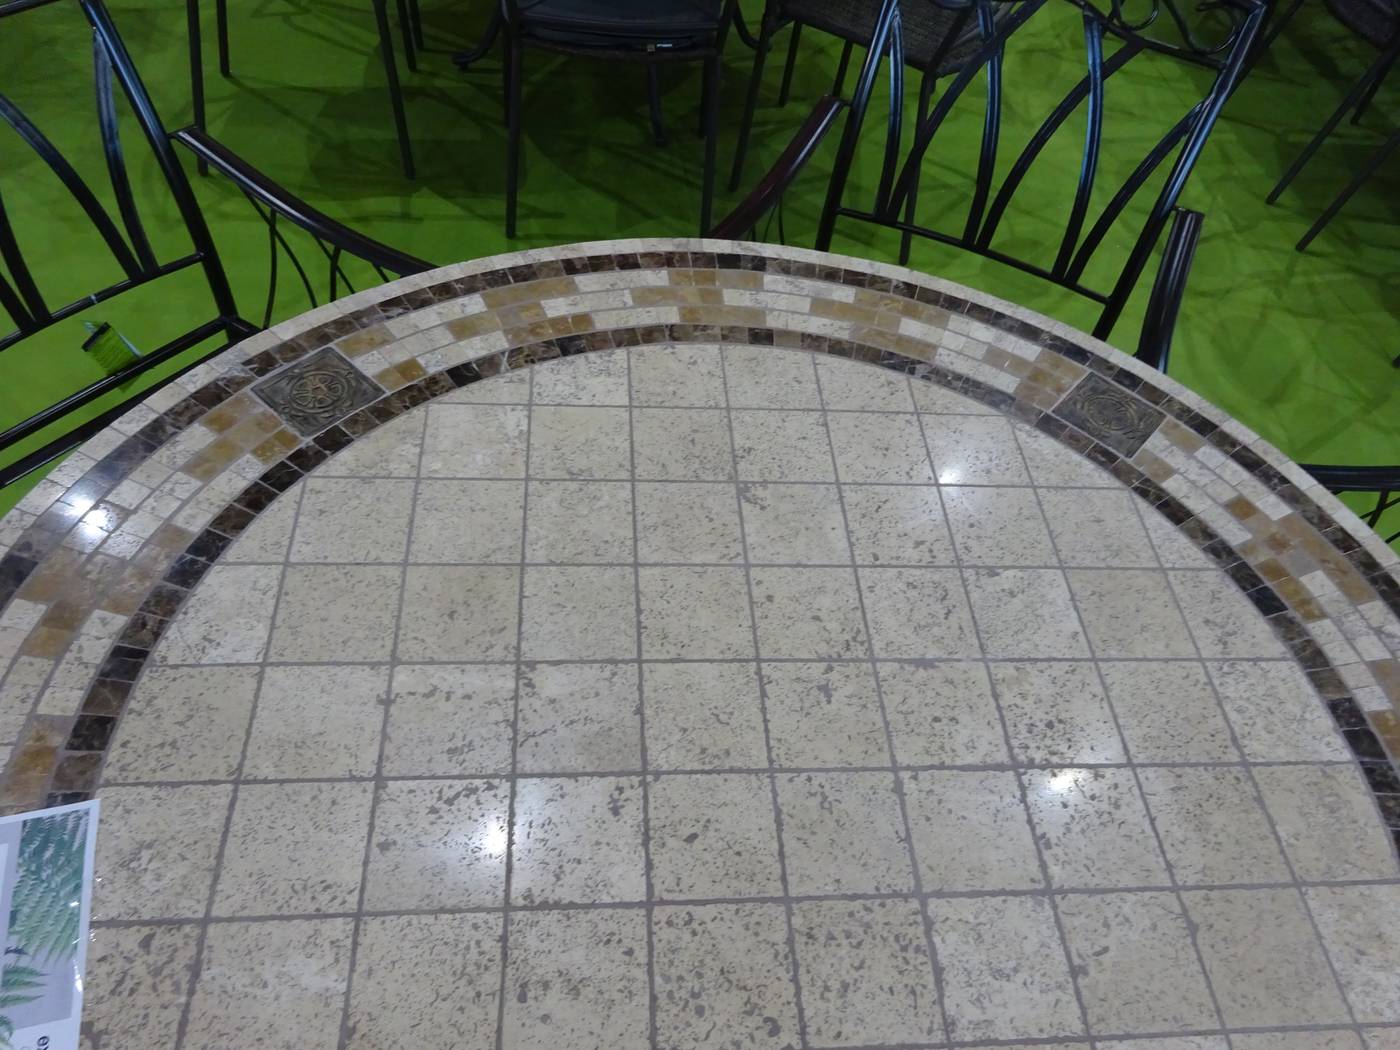 Set Mosaico Estepona 140-6 - Conjunto lujoso de forja para jardín: 1 mesa mosaico cerámico + 6 sillones de forja + 6 cojines